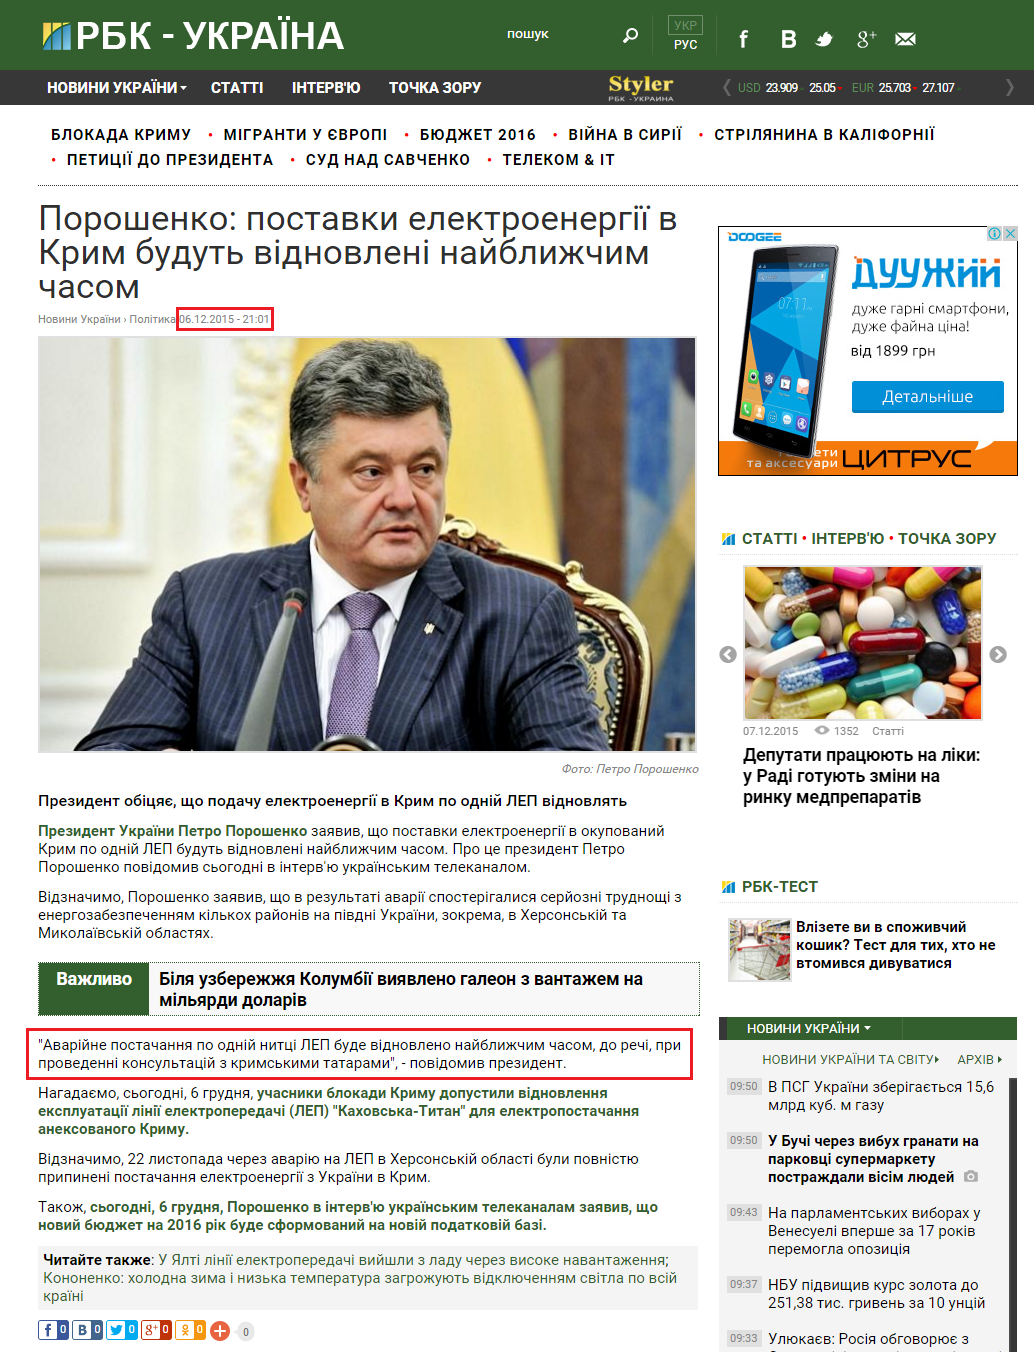 http://www.rbc.ua/ukr/news/poroshenko-postavki-elektroenergii-krym-budut-1449428365.html